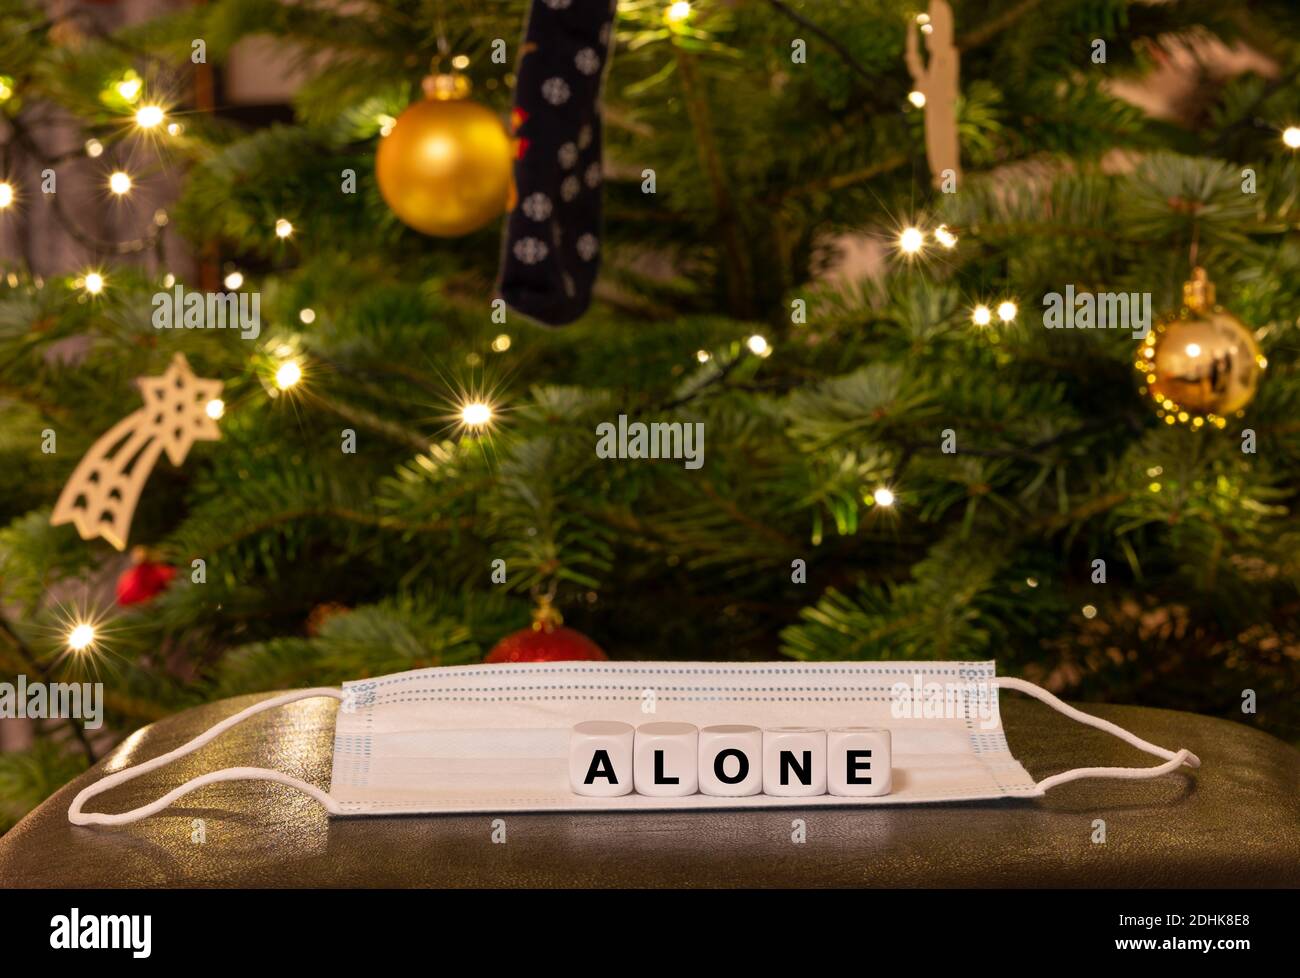 Simbolo per la gente sola durante il periodo di Natale 2020. I dadi formano la parola 'solo' sulla parte superiore di una maschera di faccia davanti ad un albero di Natale. Foto Stock